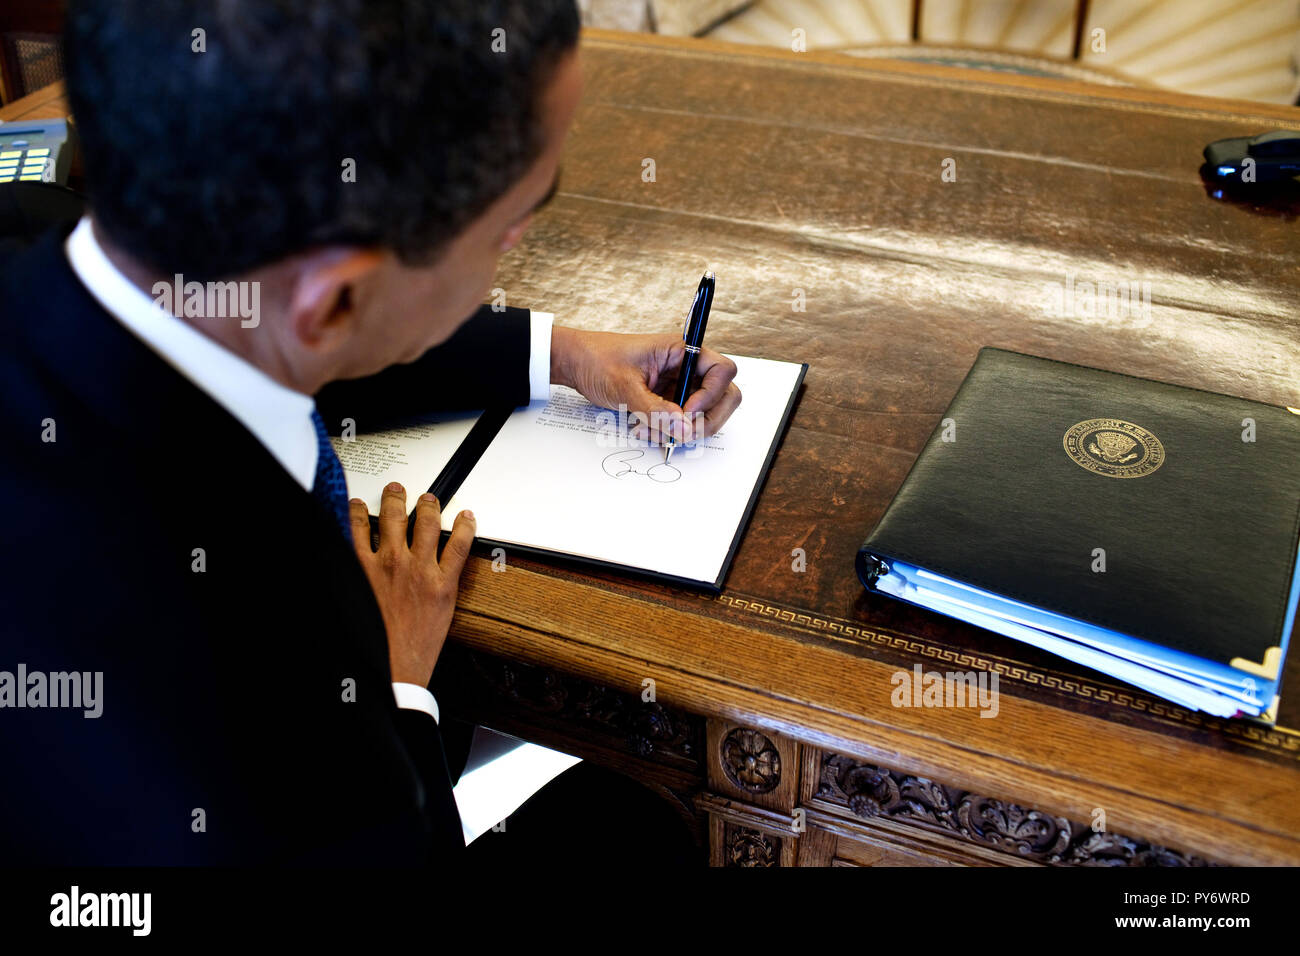 Le président Barack Obama écrit à son bureau dans le bureau ovale 3/3/09. Photo Officiel de la Maison Blanche par Pete Souza Banque D'Images